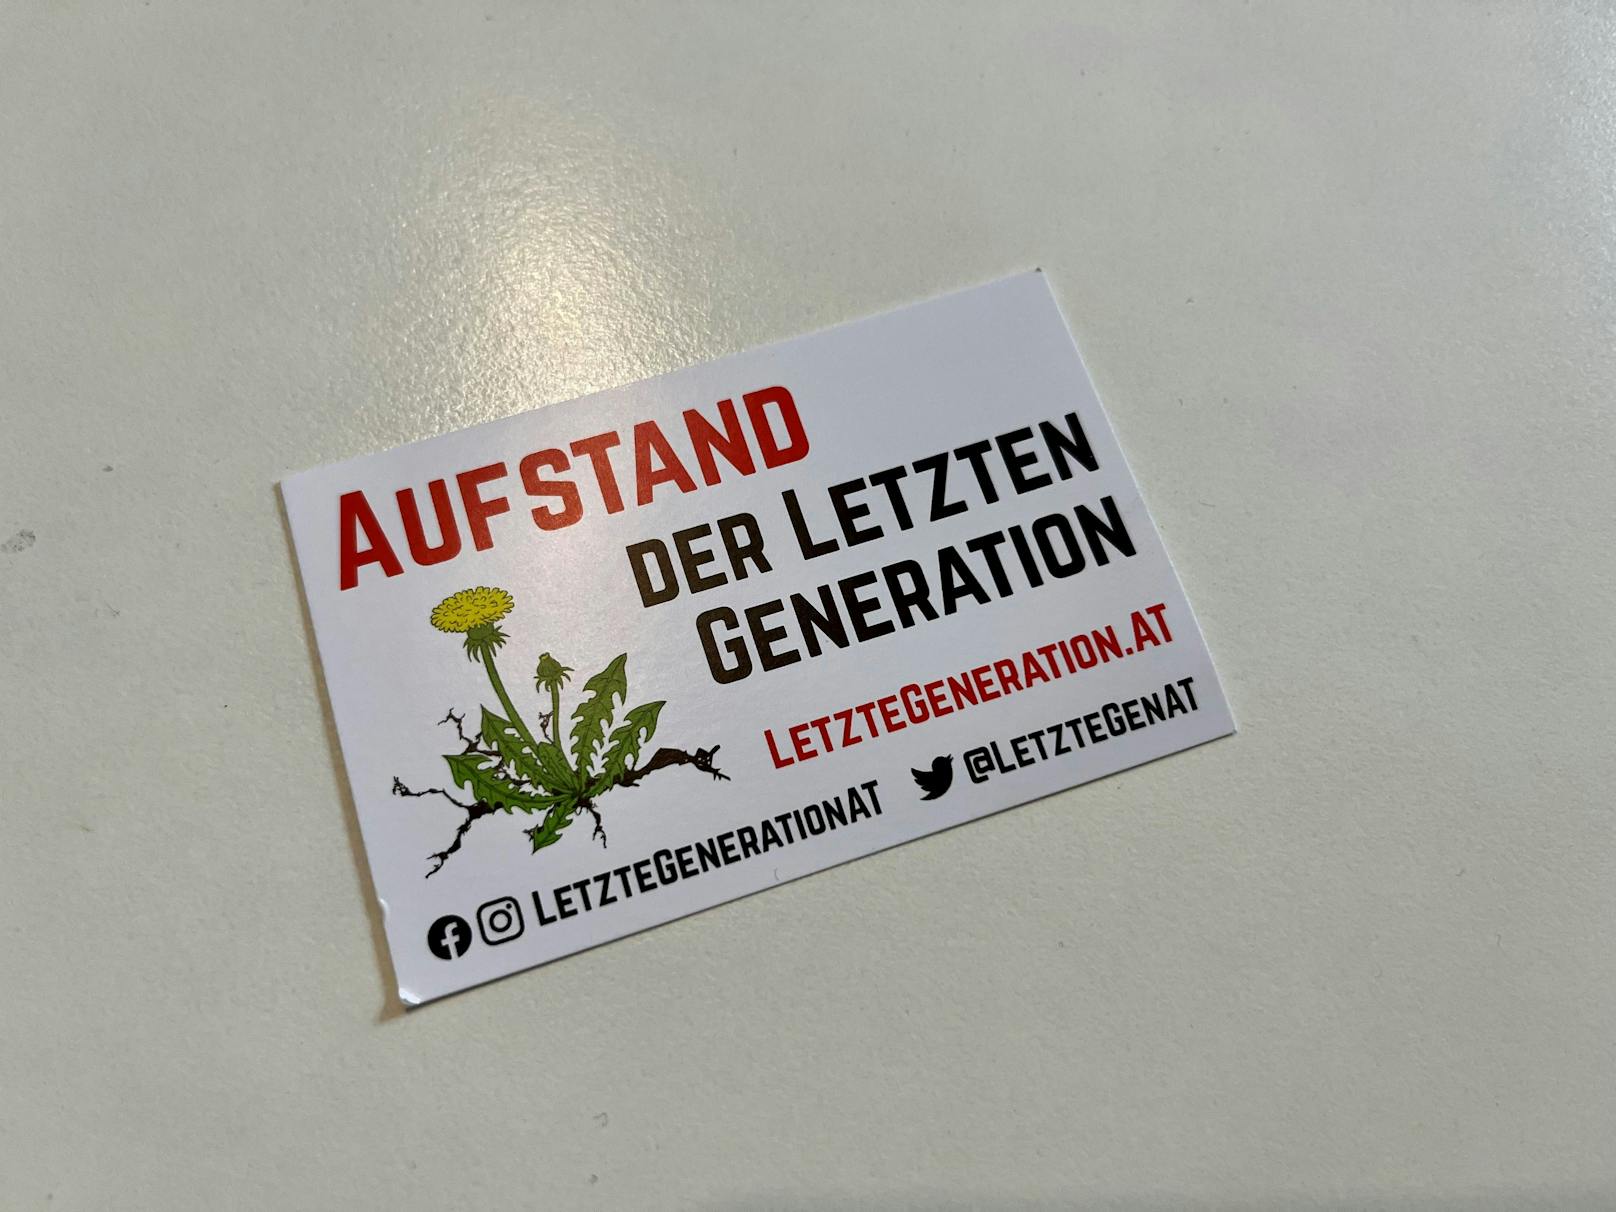 Auf Visitenkarten ruft die "Letzte Generation" zum "Aufstand" auf.